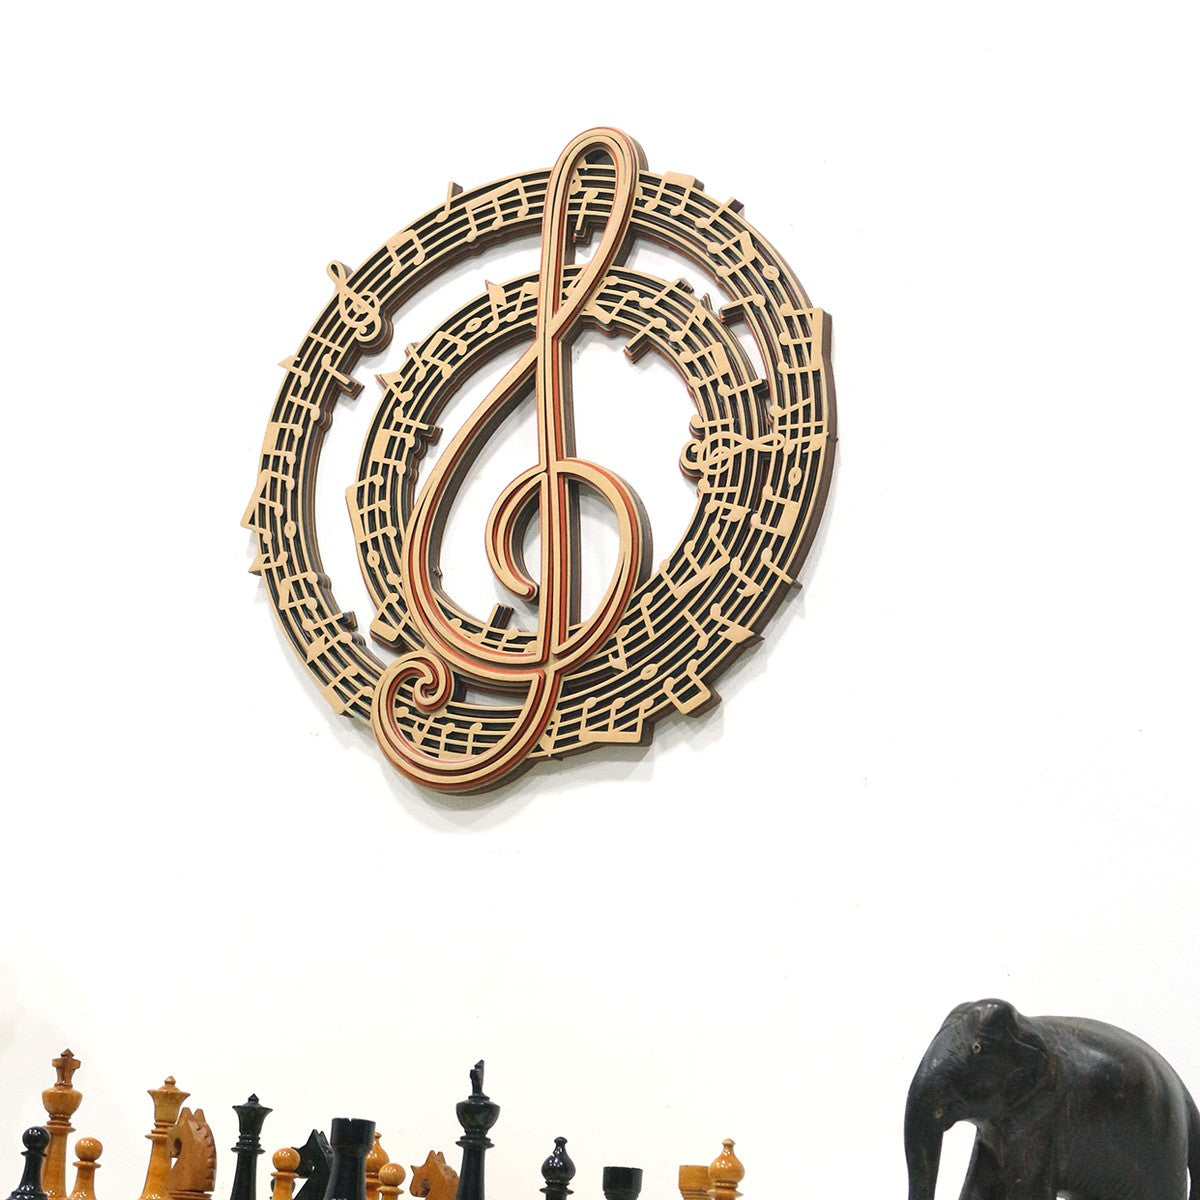 Music Symbol Art